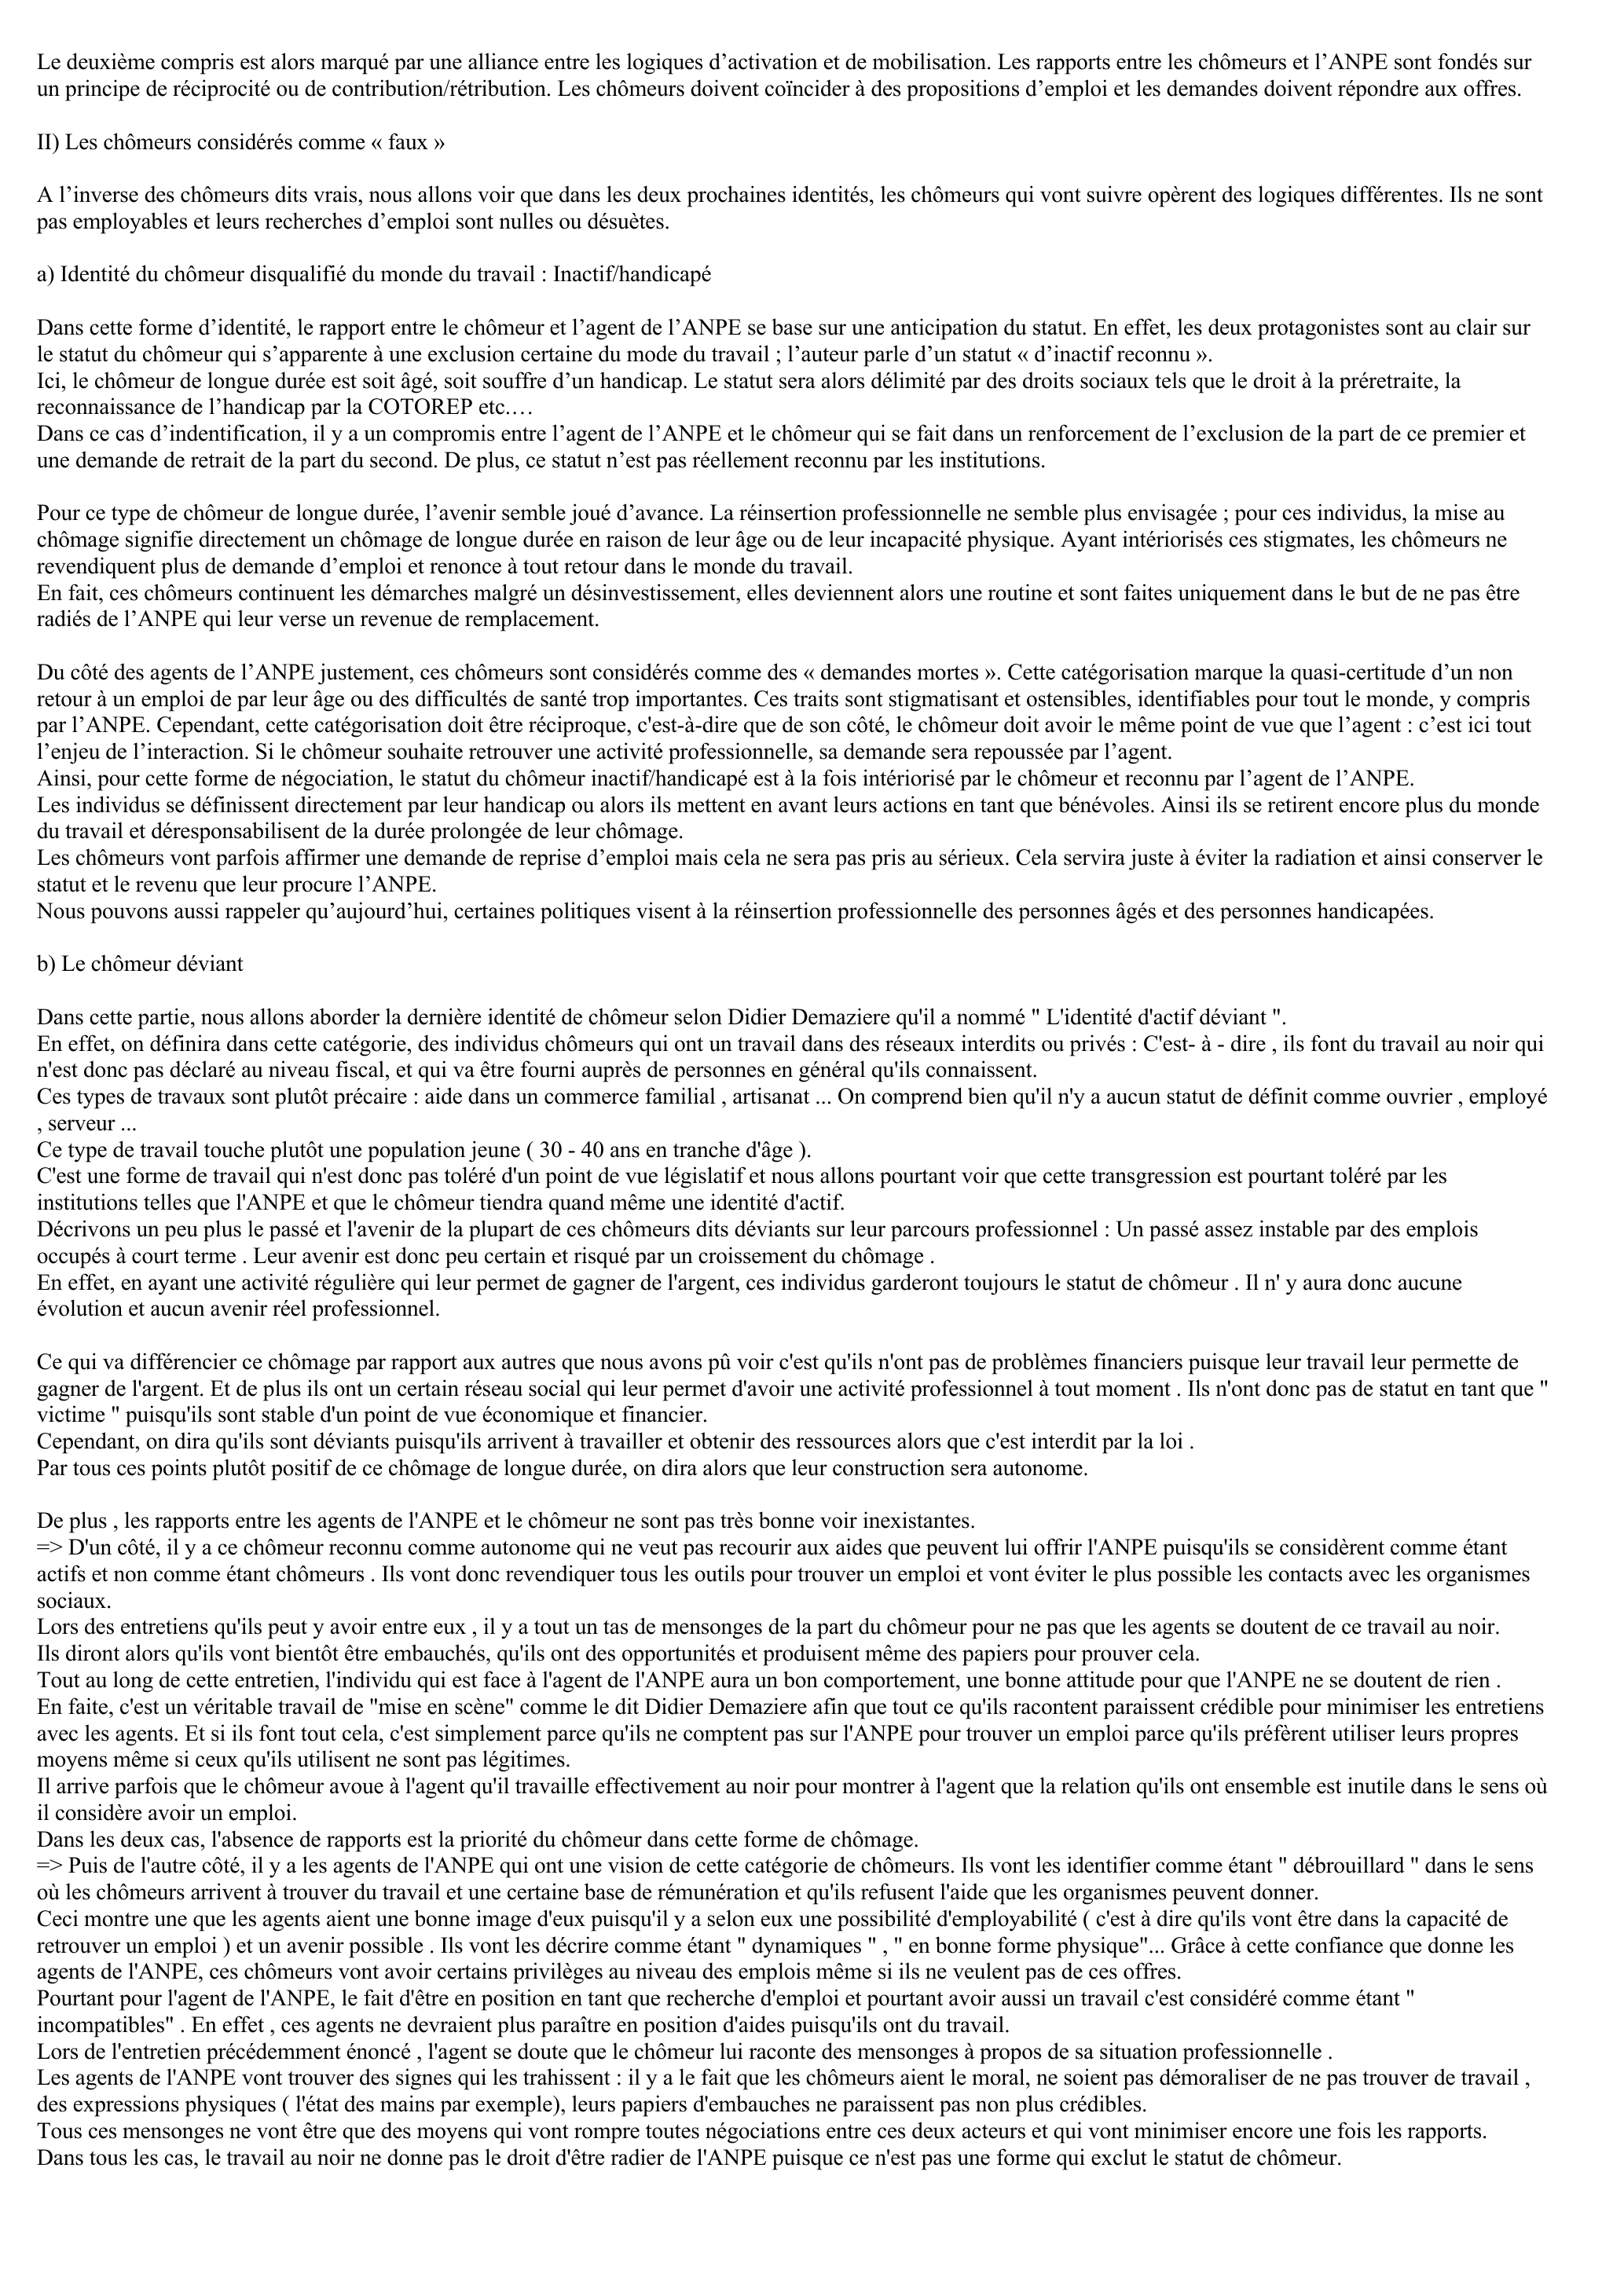 Prévisualisation du document DEMAZIERE Didier, La négociation des chômeurs de longue durée, in Revue Française de Sociologie, Ophrys édition